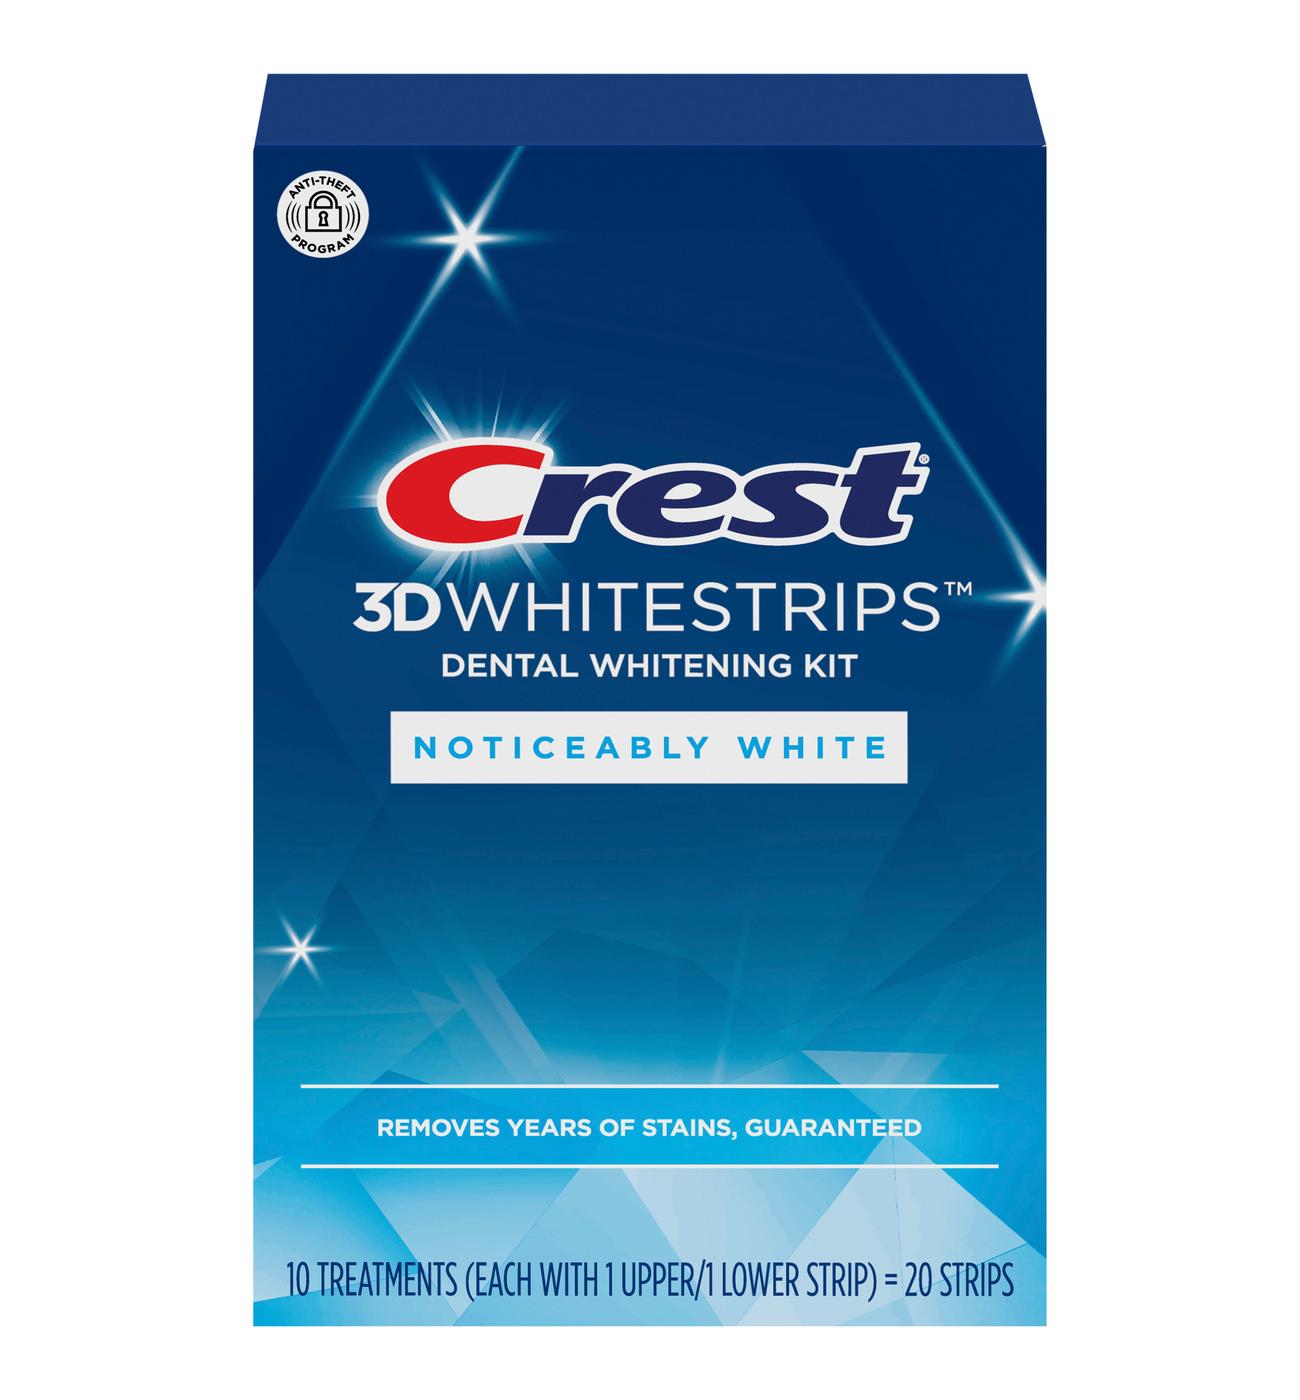 Crest 3D Whitestrips Dental Whitening Kit; image 1 of 6